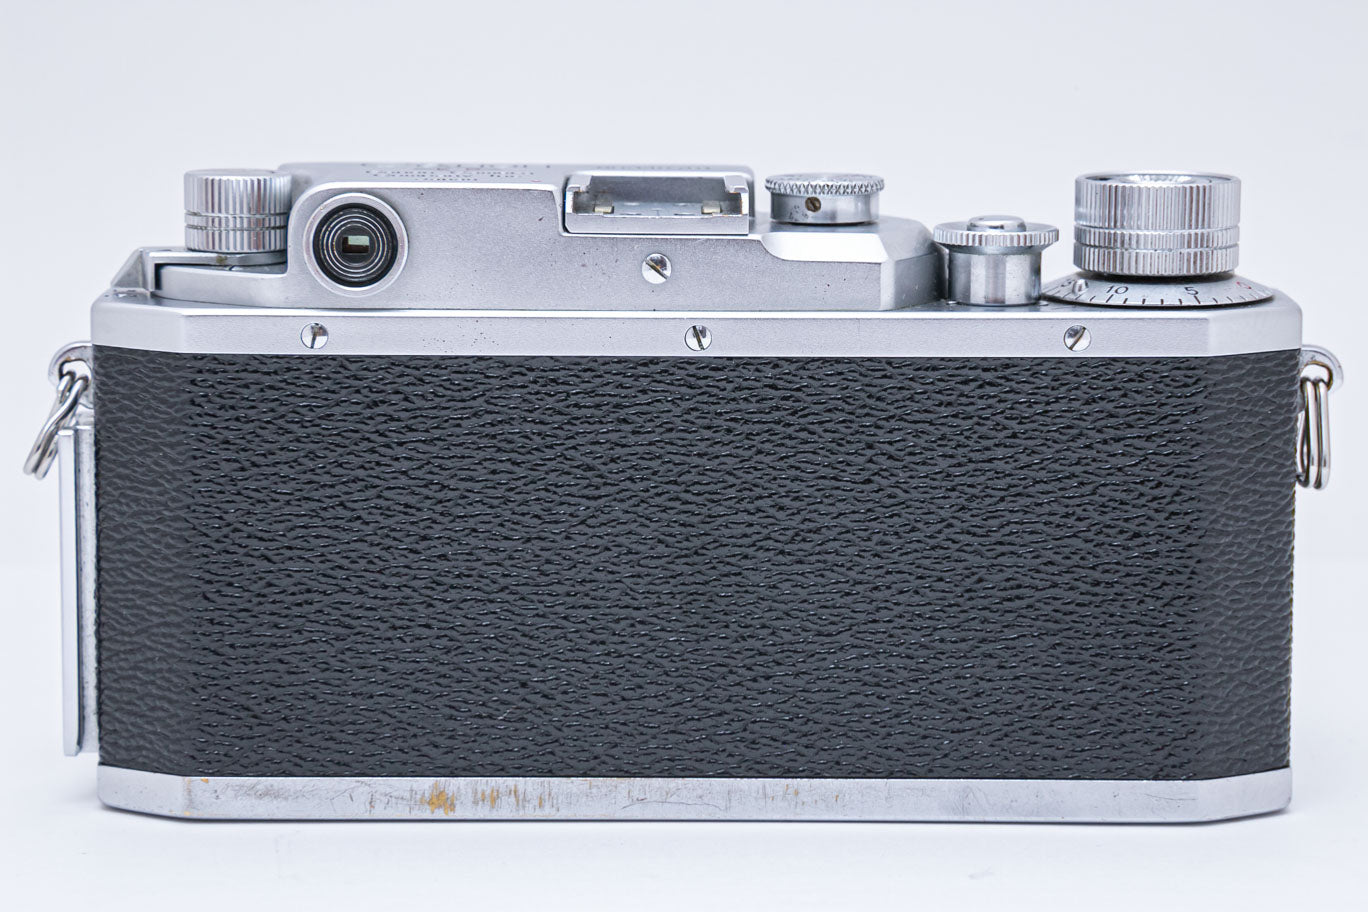 CanonⅡF〈E.P〉刻印／50mmf1.8Ⅰ型